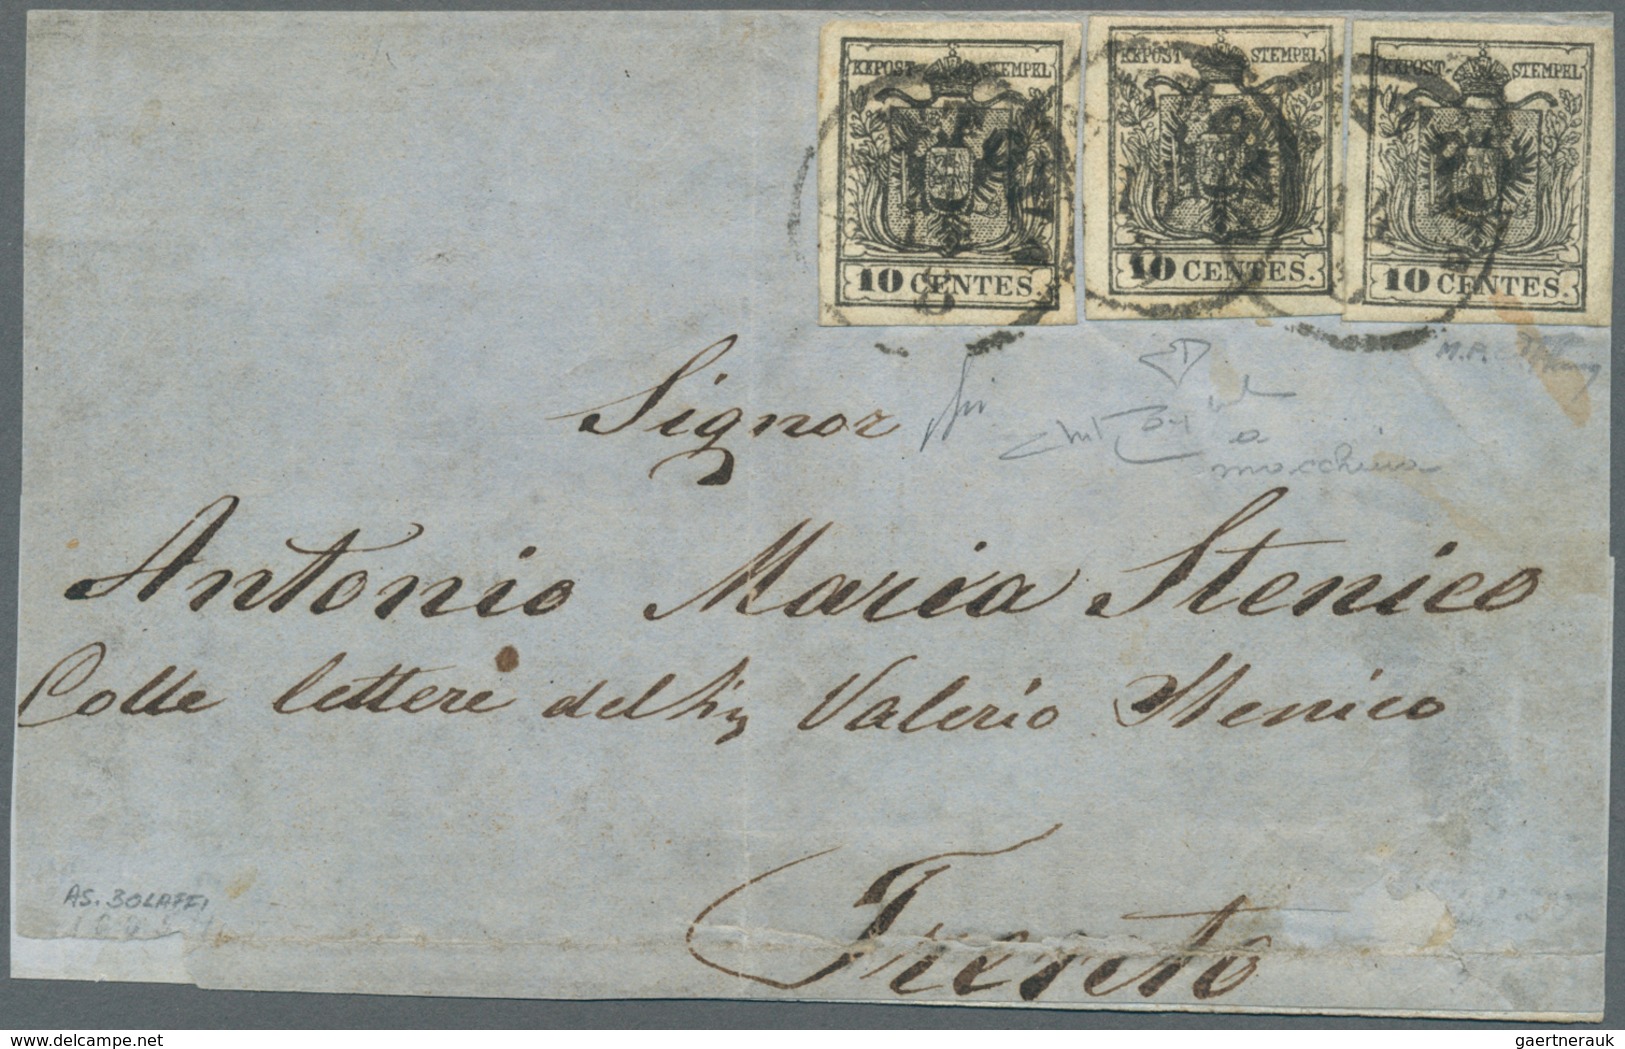 Österreich - Lombardei Und Venetien: 1857, 3 X 10 C Schwarz, Maschinenpapier, Alle Marken Vollrandig - Lombardo-Vénétie